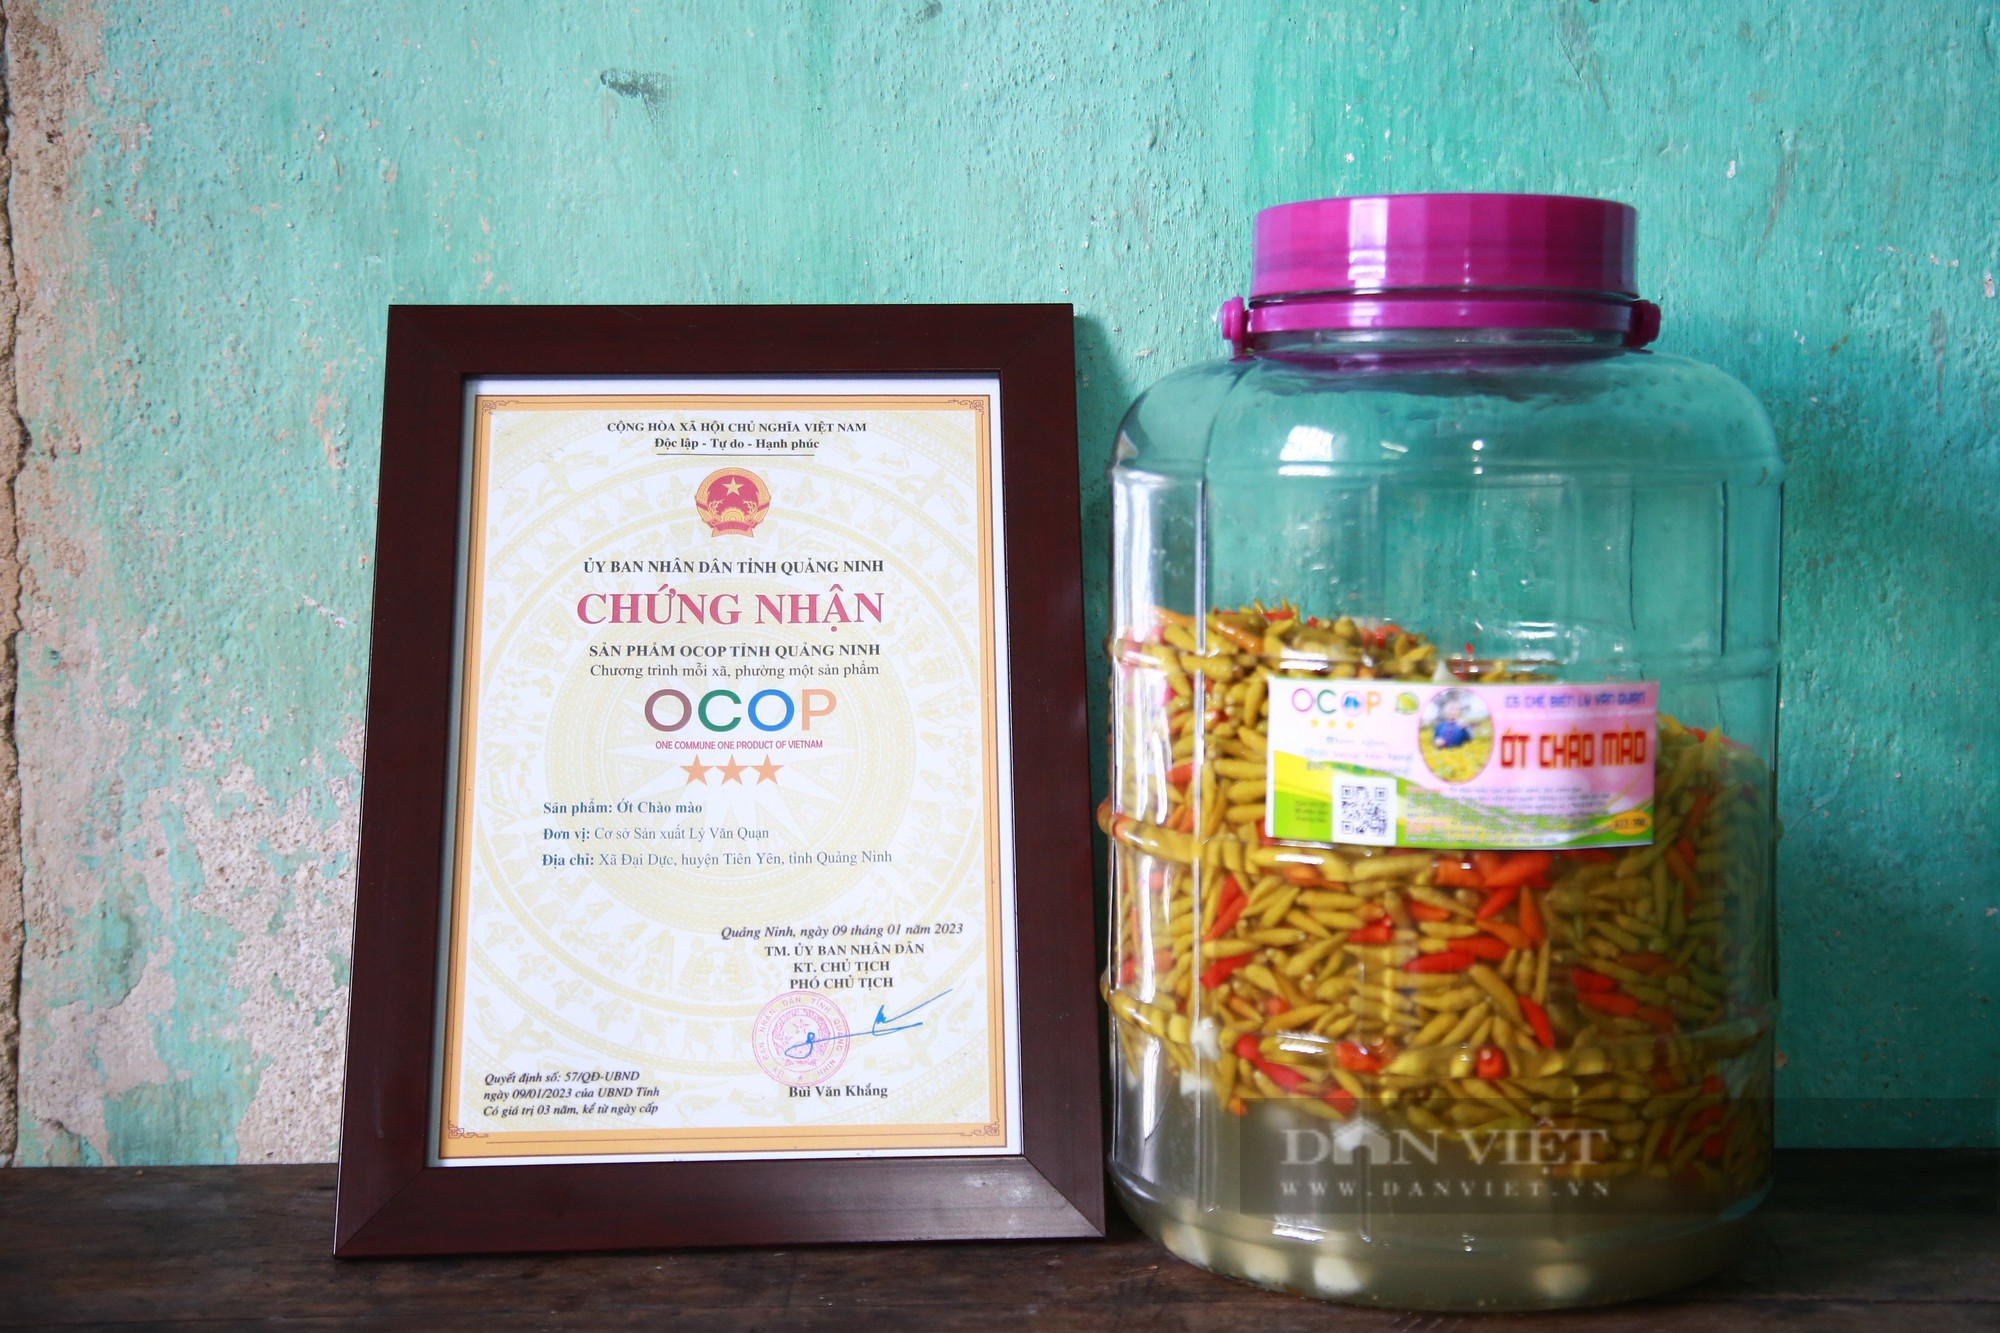 Trồng loại ớt có tên lạ lùng, trái nhỏ hơn đầu đũa, thầy giáo vùng cao Quảng Ninh không đủ hàng để bán - Ảnh 4.